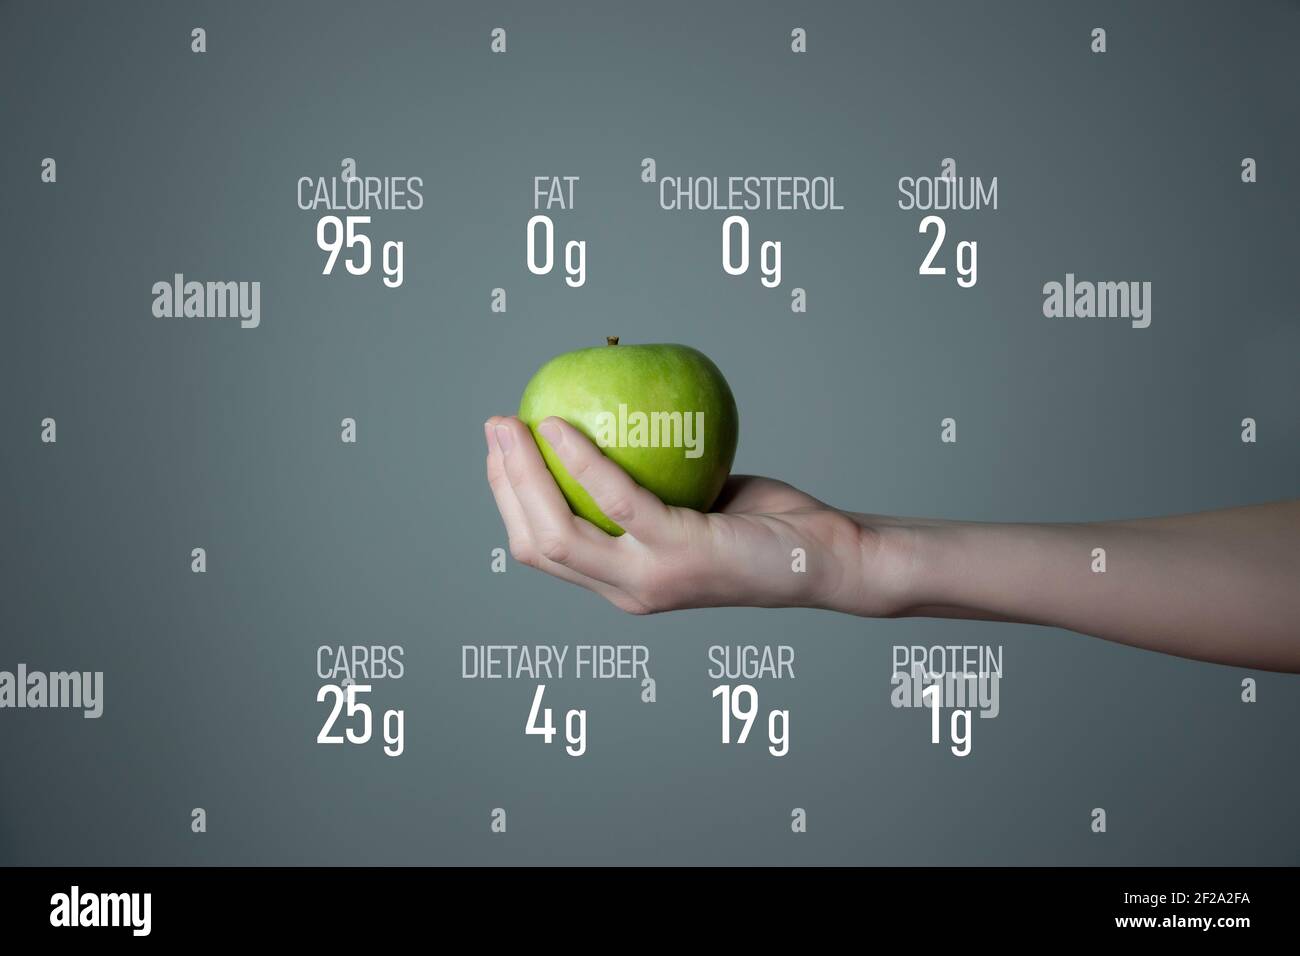 Frau`s Hand hält grünen Apfel, Ernährung Fakten auf grauem Hintergrund. Diätetische Lebensmittel und Vitamine Konzeptvorlage für Produktwerbung. Stockfoto